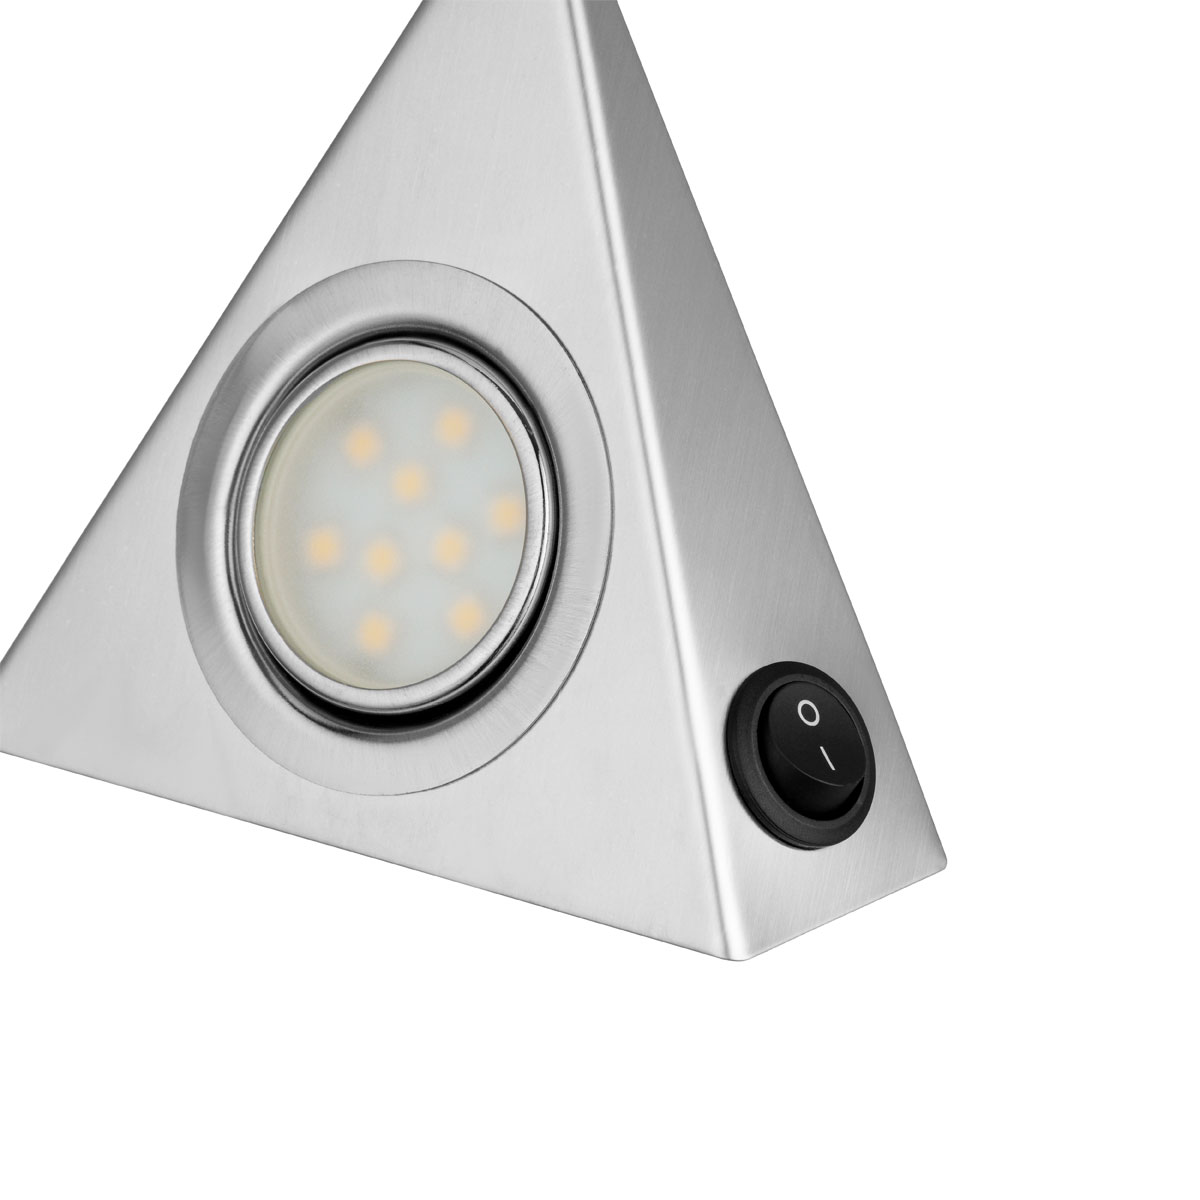 REV Ritter LED-Unterbauleuchte TrianglePromo 502330 1,8W x 3 Schalter | m